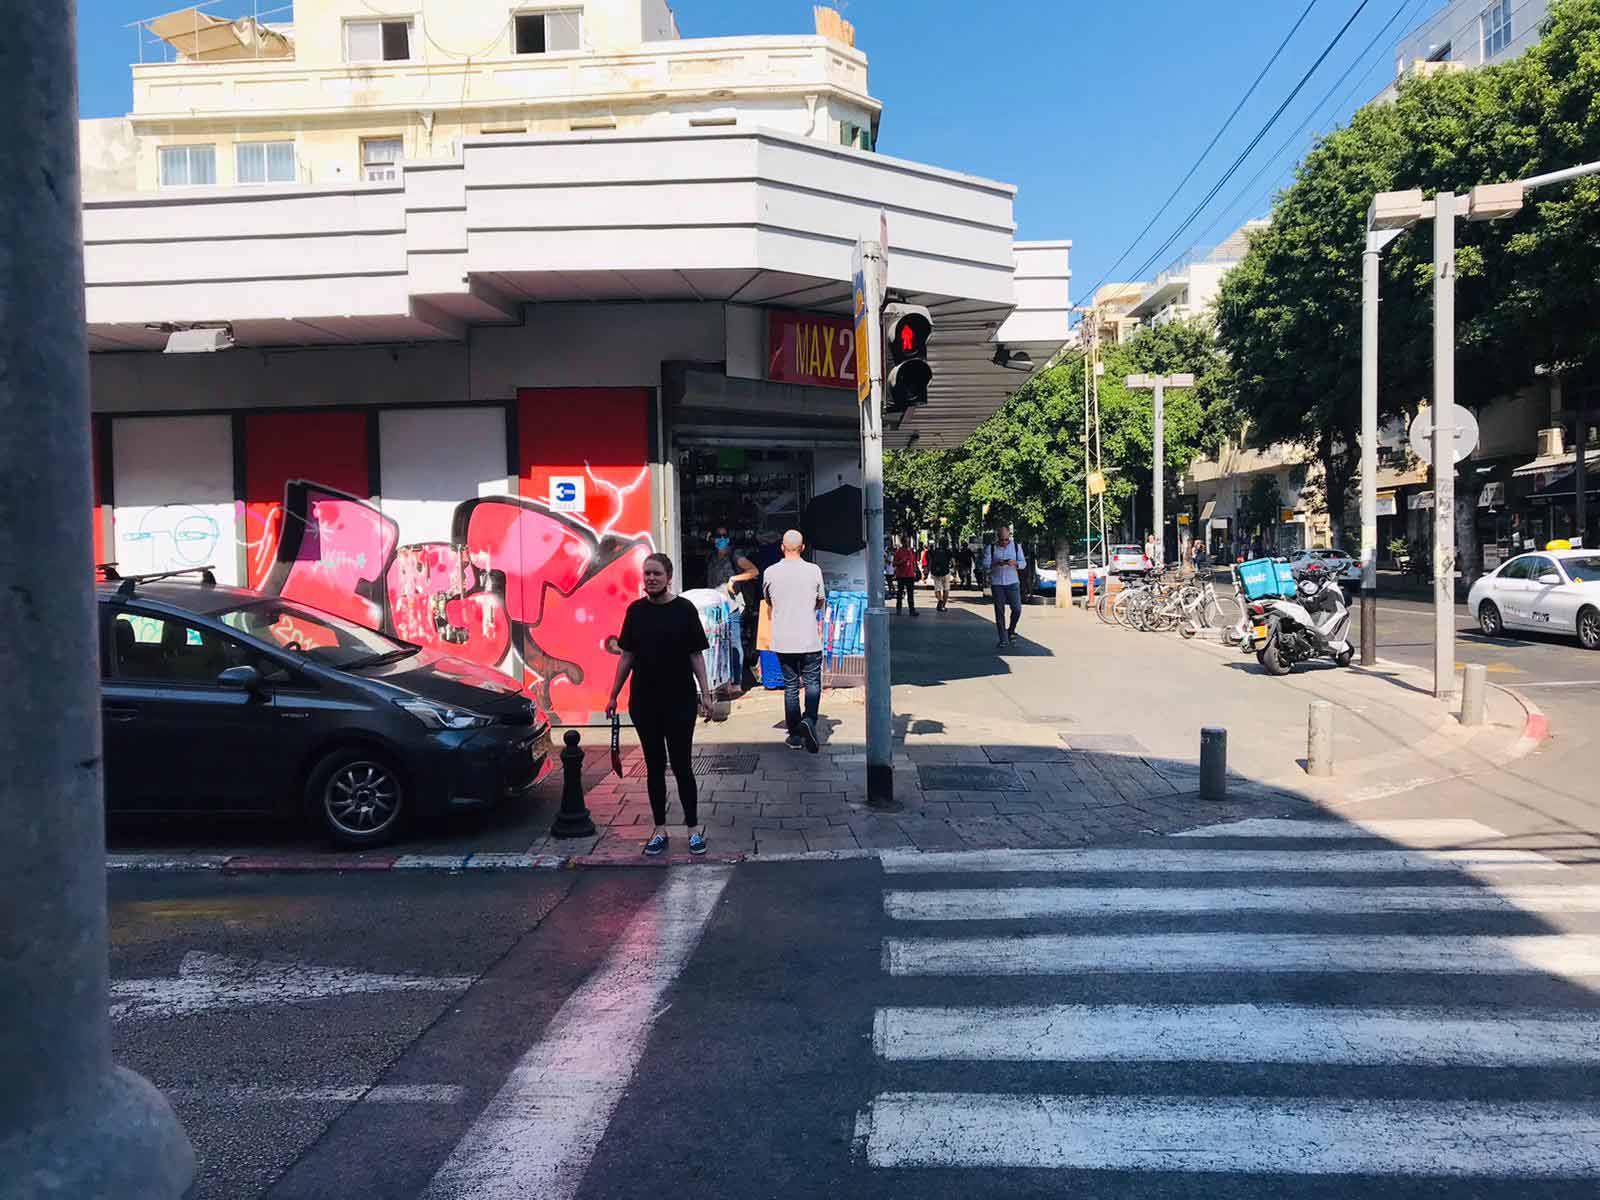 מעבר חציה, אור אדום ברחוב אלנבי, תל אביב. צילום: אביה בן דוד